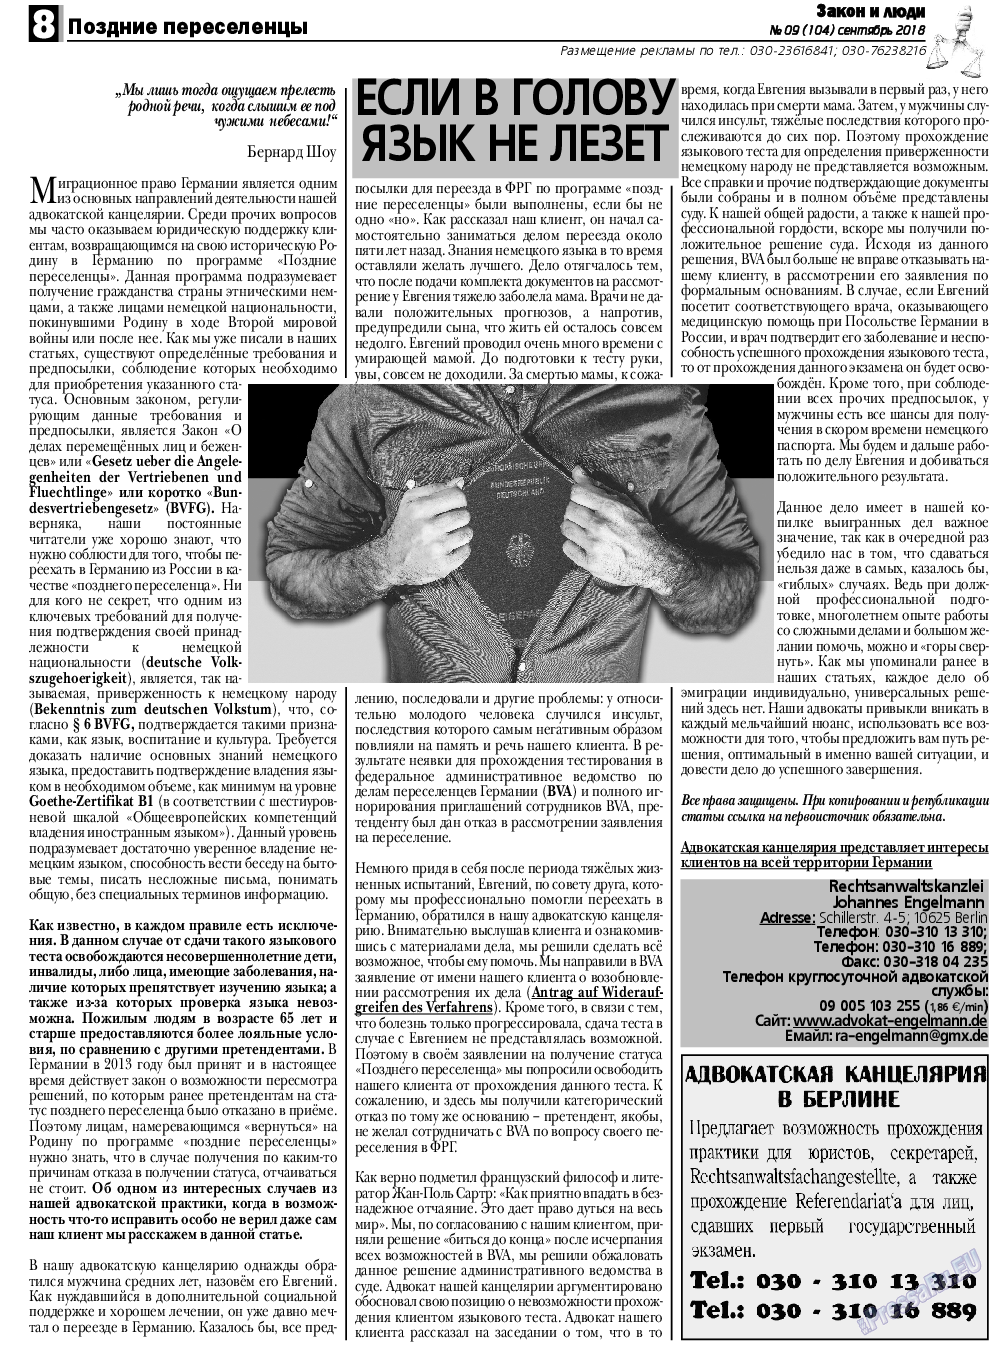 Закон и люди, газета. 2018 №9 стр.8